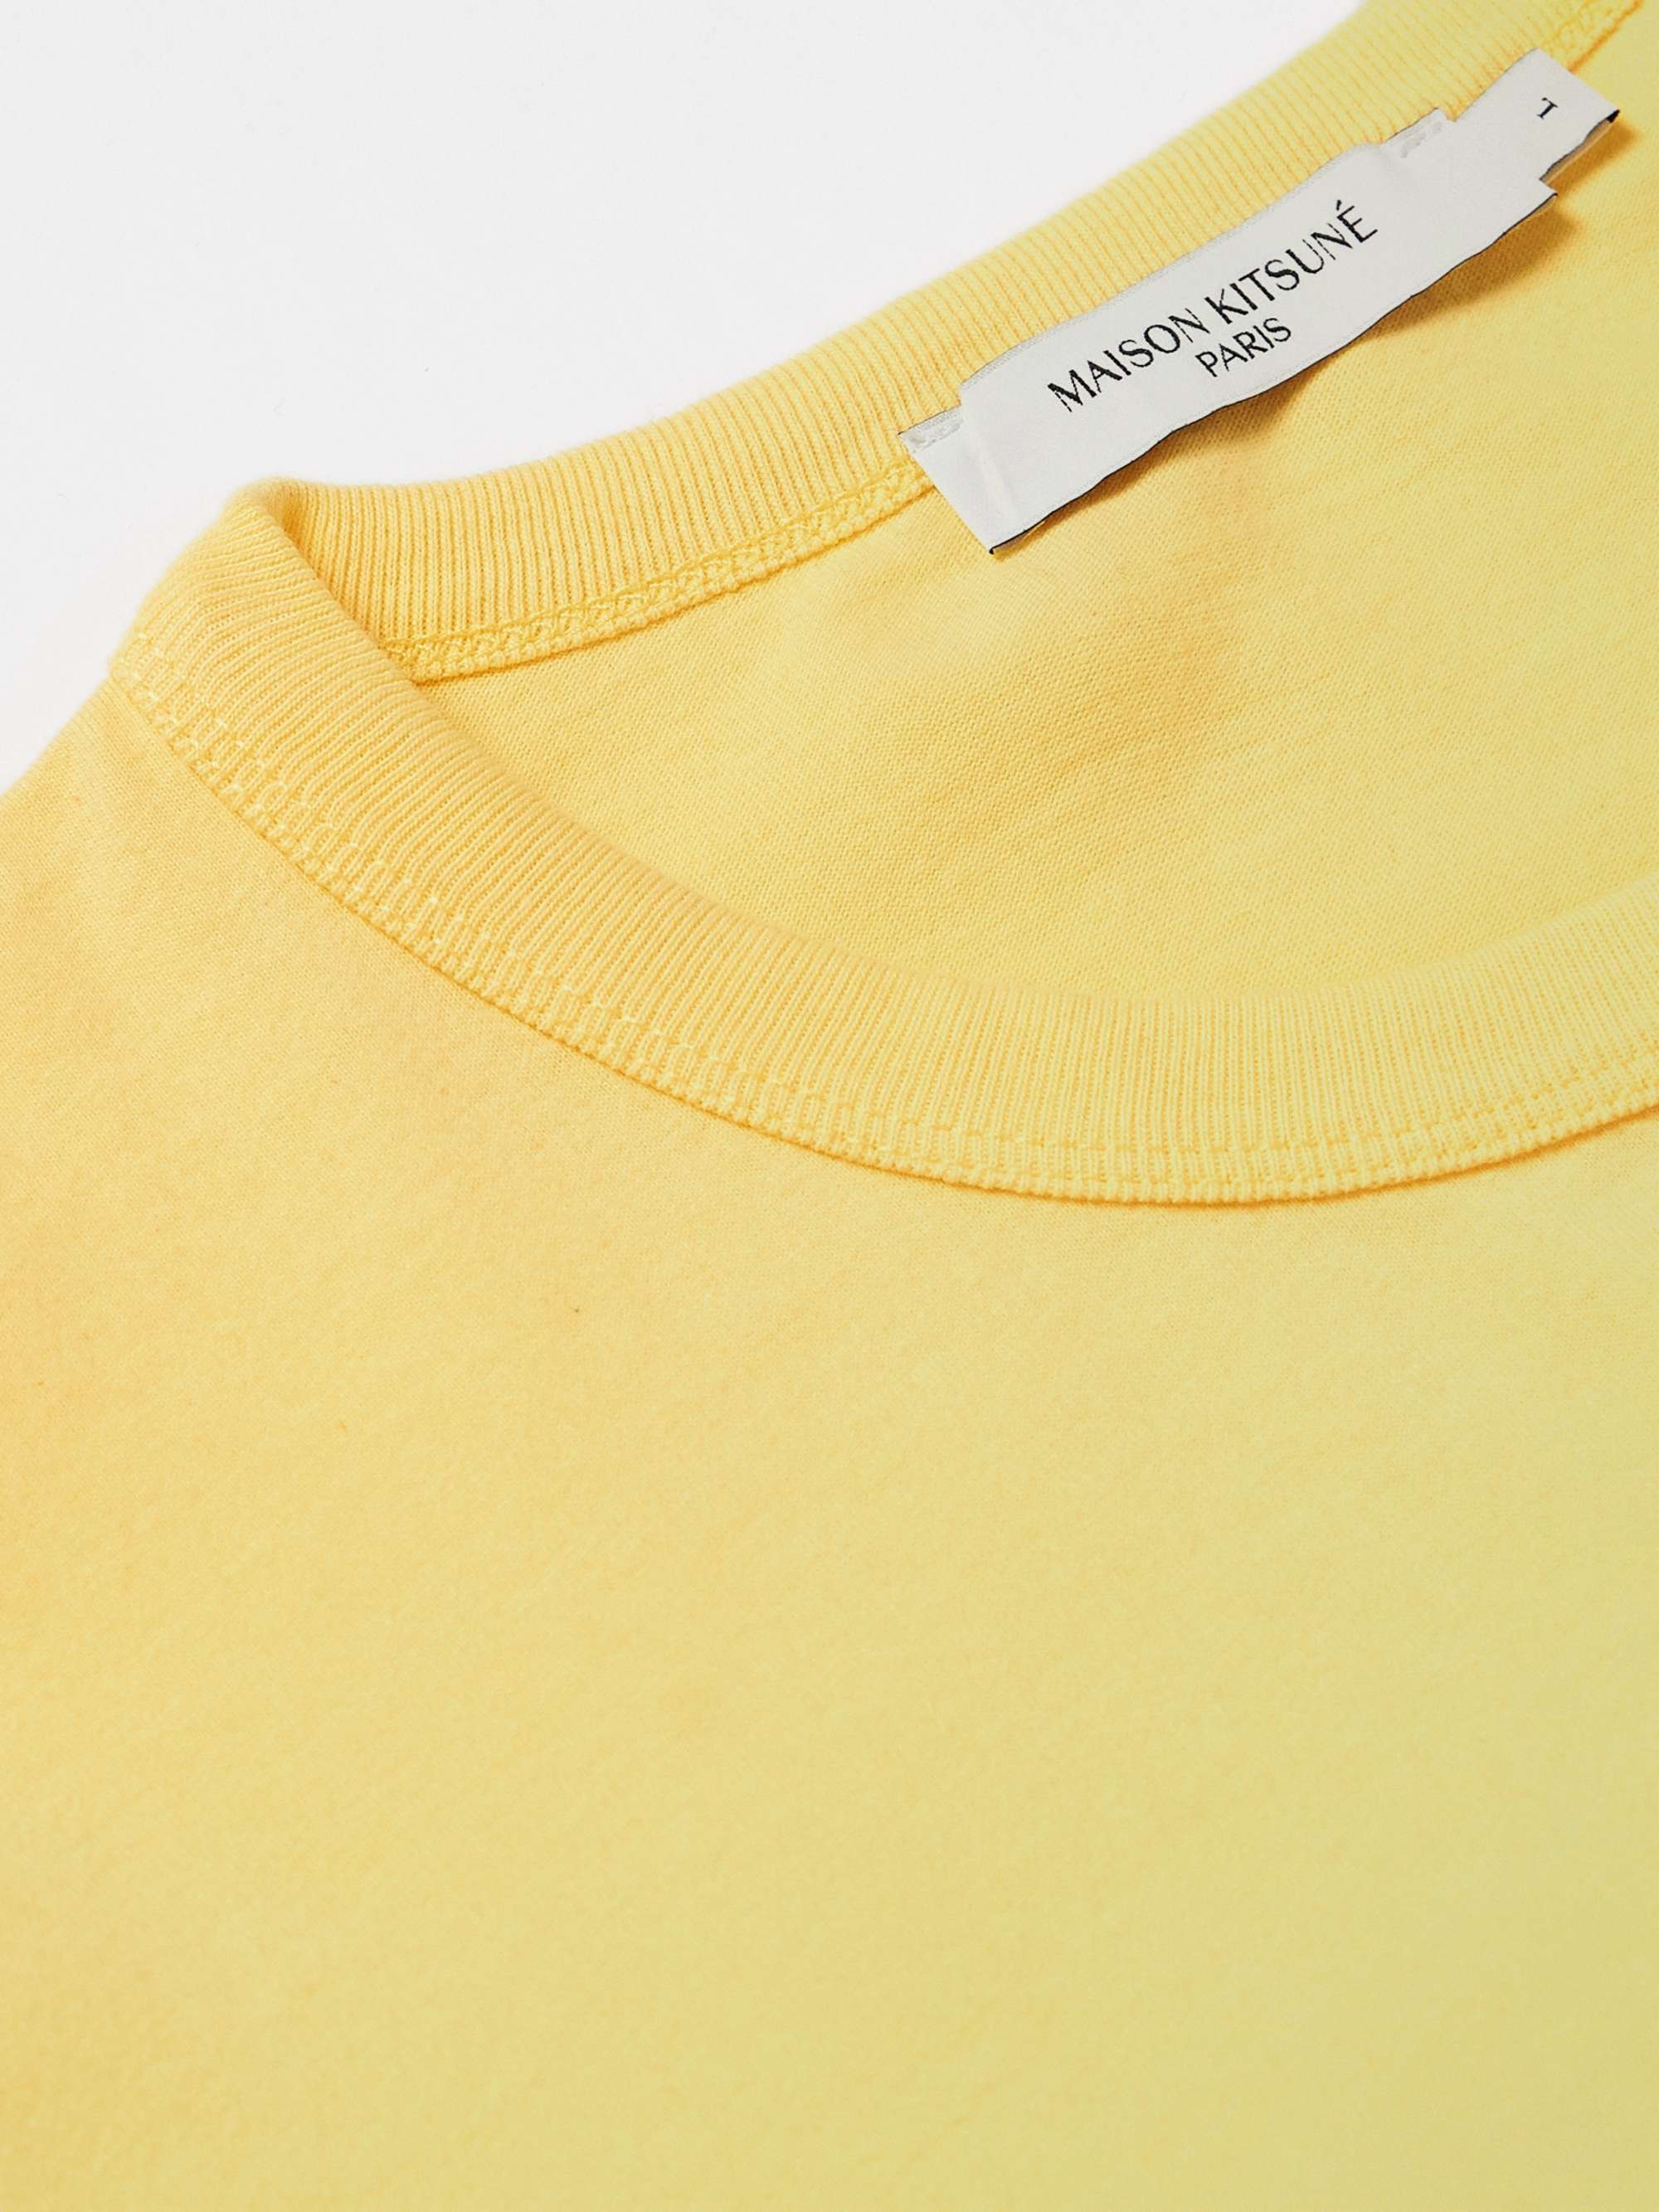 MAISON KITSUNÉ Logo-Appliquéd Cotton-Jersey T-Shirt for Men | MR PORTER